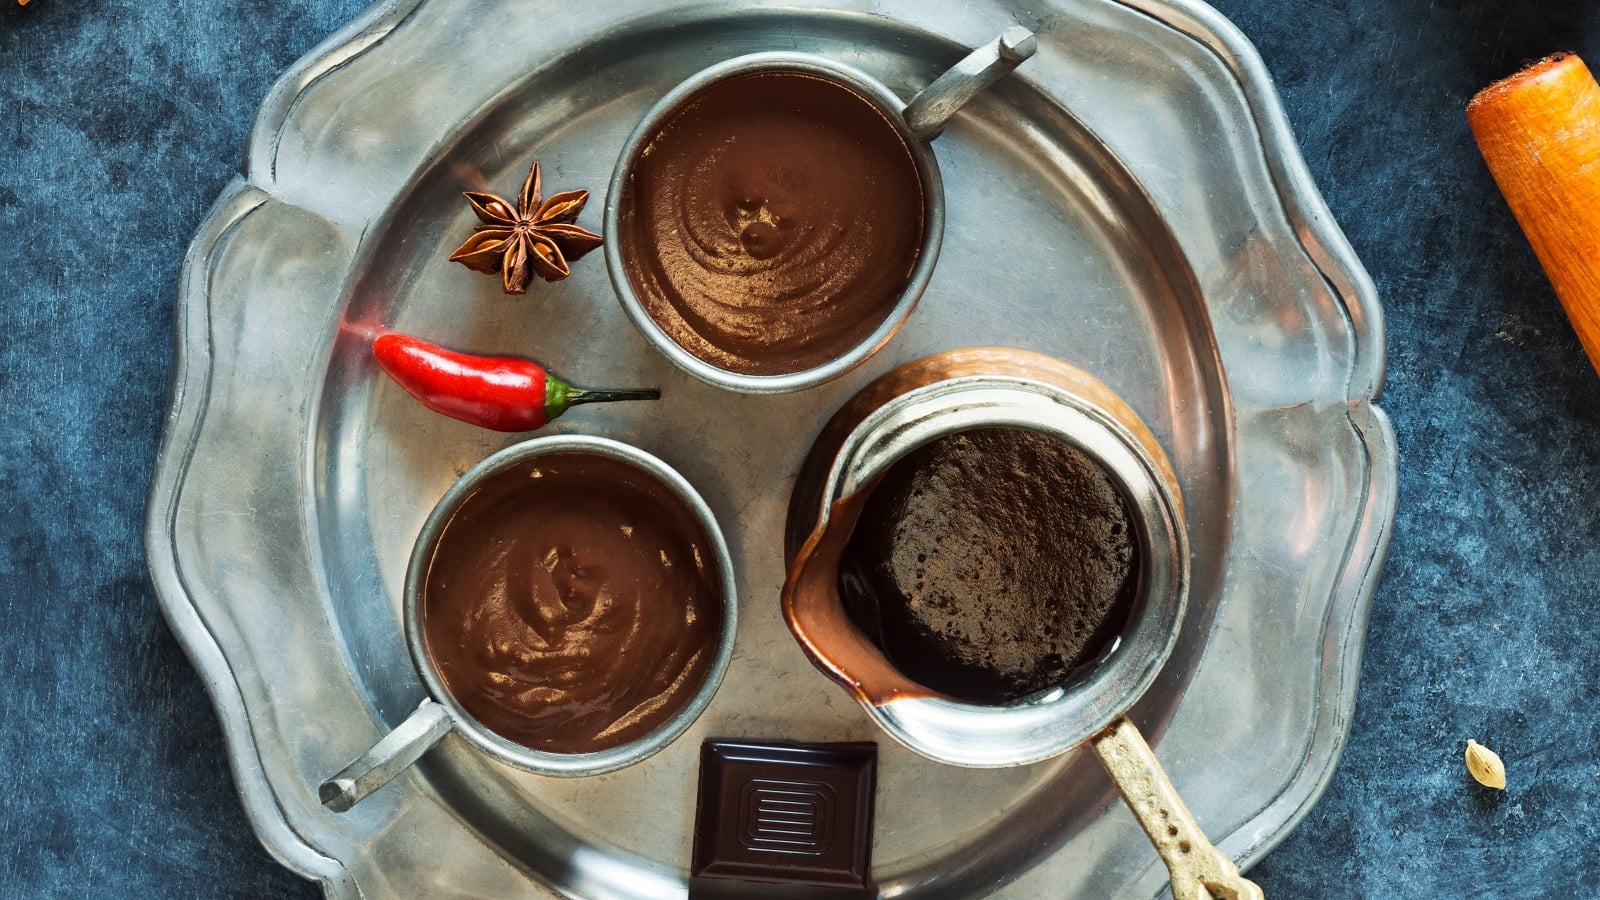 Zwei Tassen gefüllt mit Xocolatl neben einer Kanne, einem Stück zartbitterschokolade, einer Chilischote und einem Stück Sternanis auf einem silbernen Tablett vor einem dunkelblauem Hintergrund, von oben.